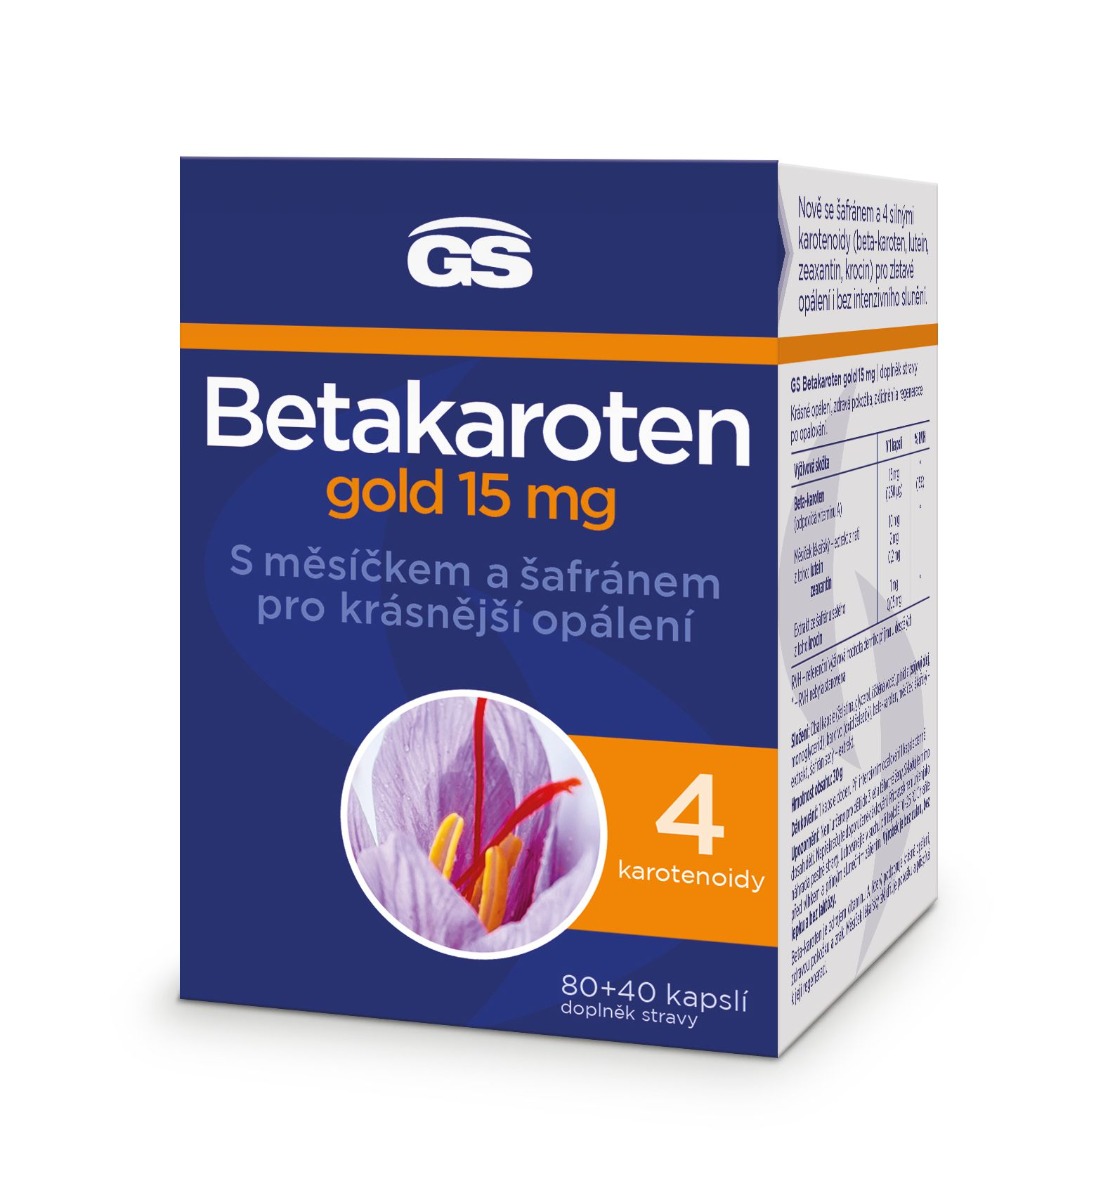 GS Betakaroten gold 15 mg 80+40 kapslí GS